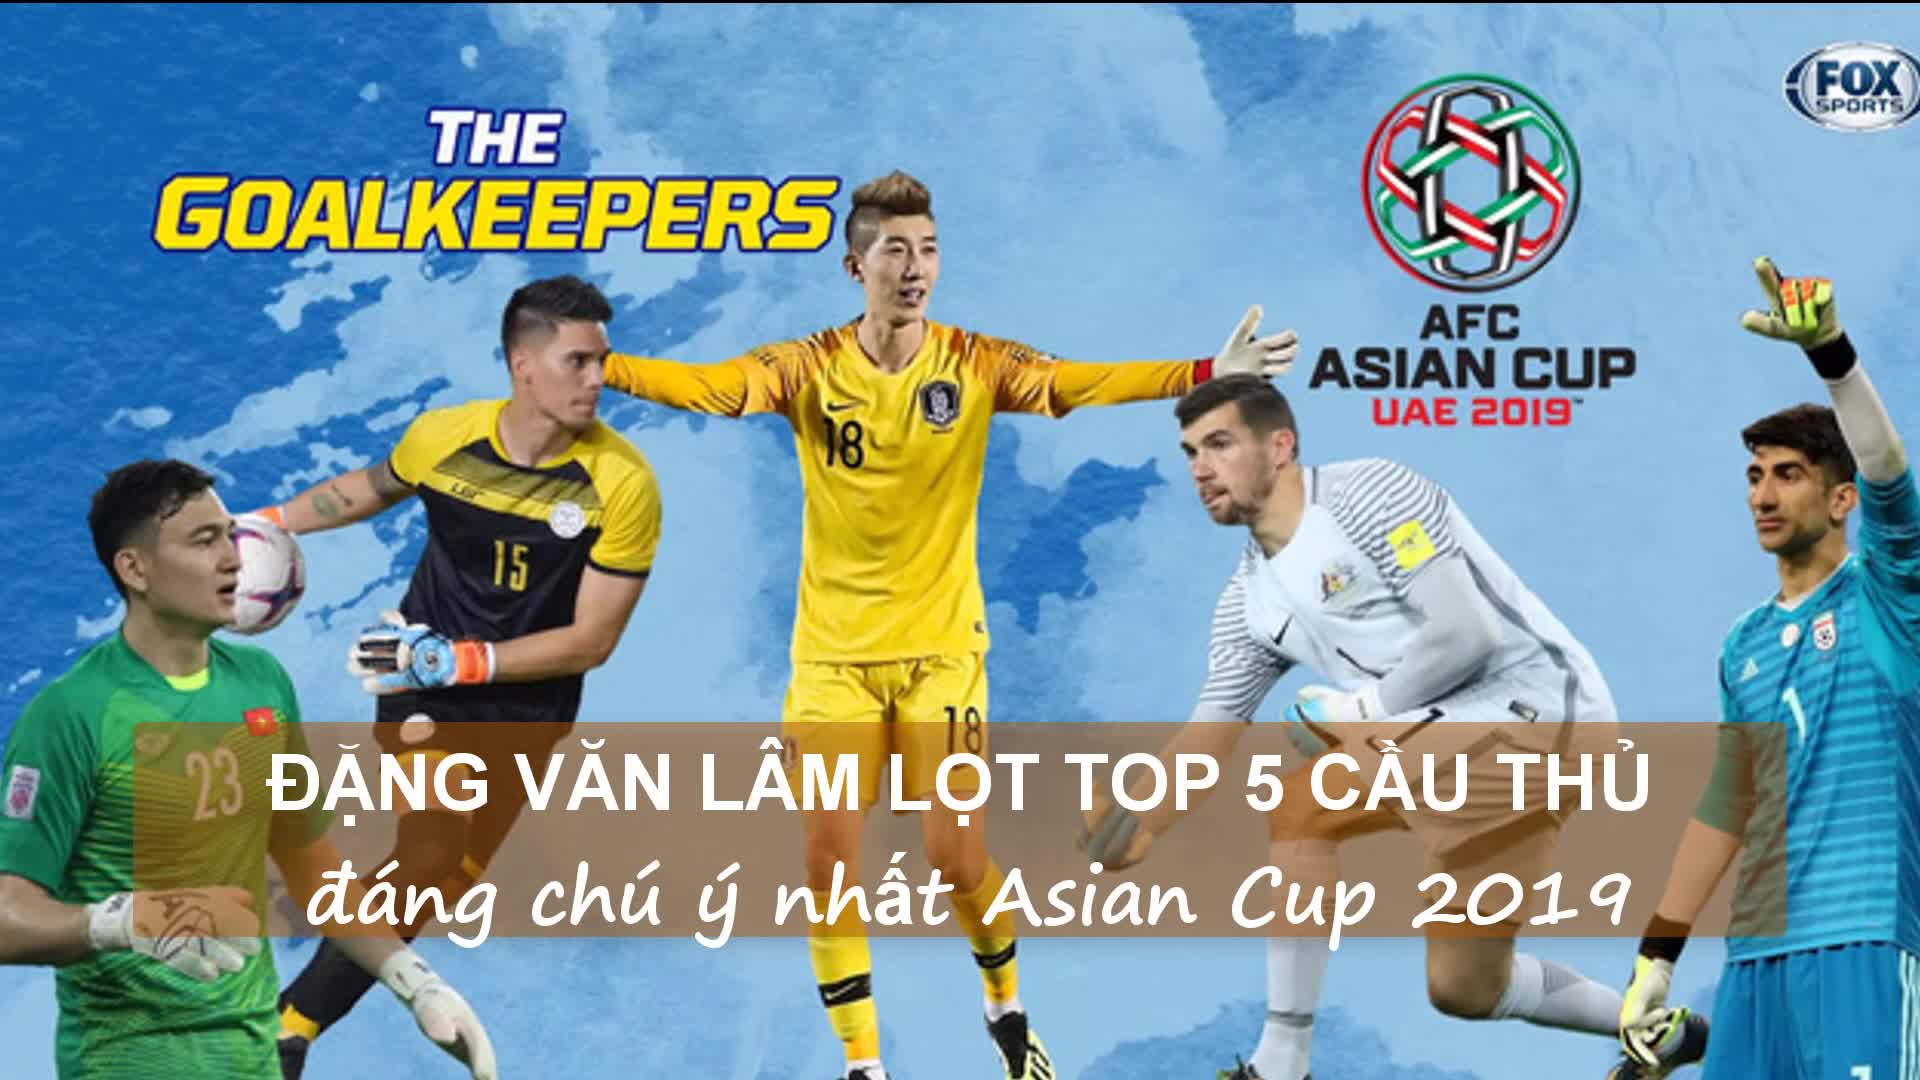 Clip: Đặng Văn Lâm lọt top 5 thủ môn đáng chú ý nhất Asian Cup 2019